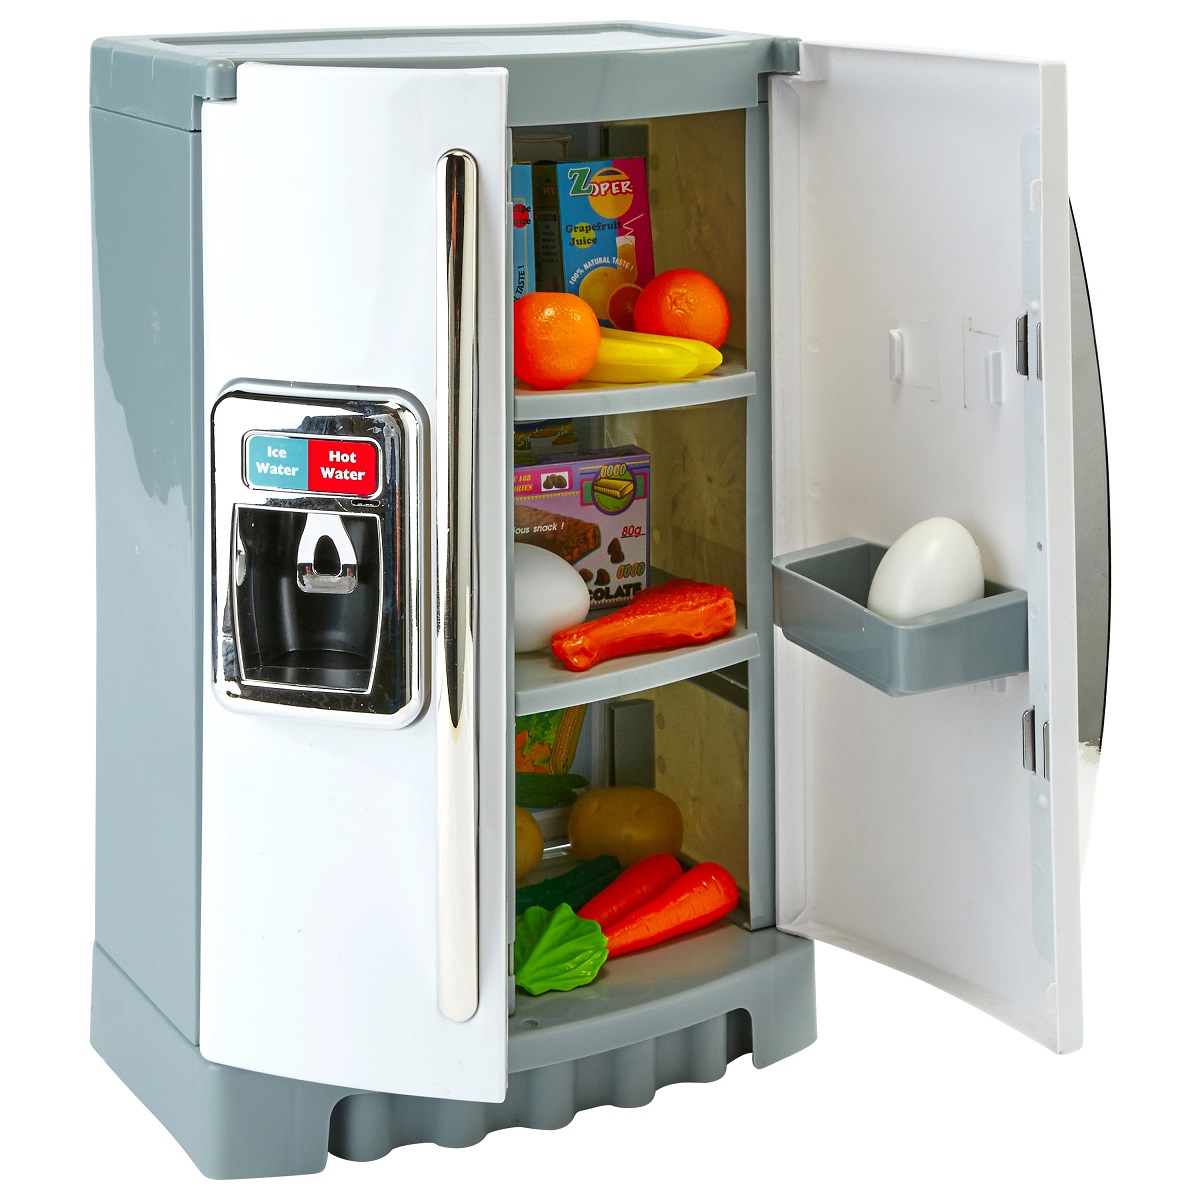 Mon réfrigérateur Américain 46 cm - Jouet imitation